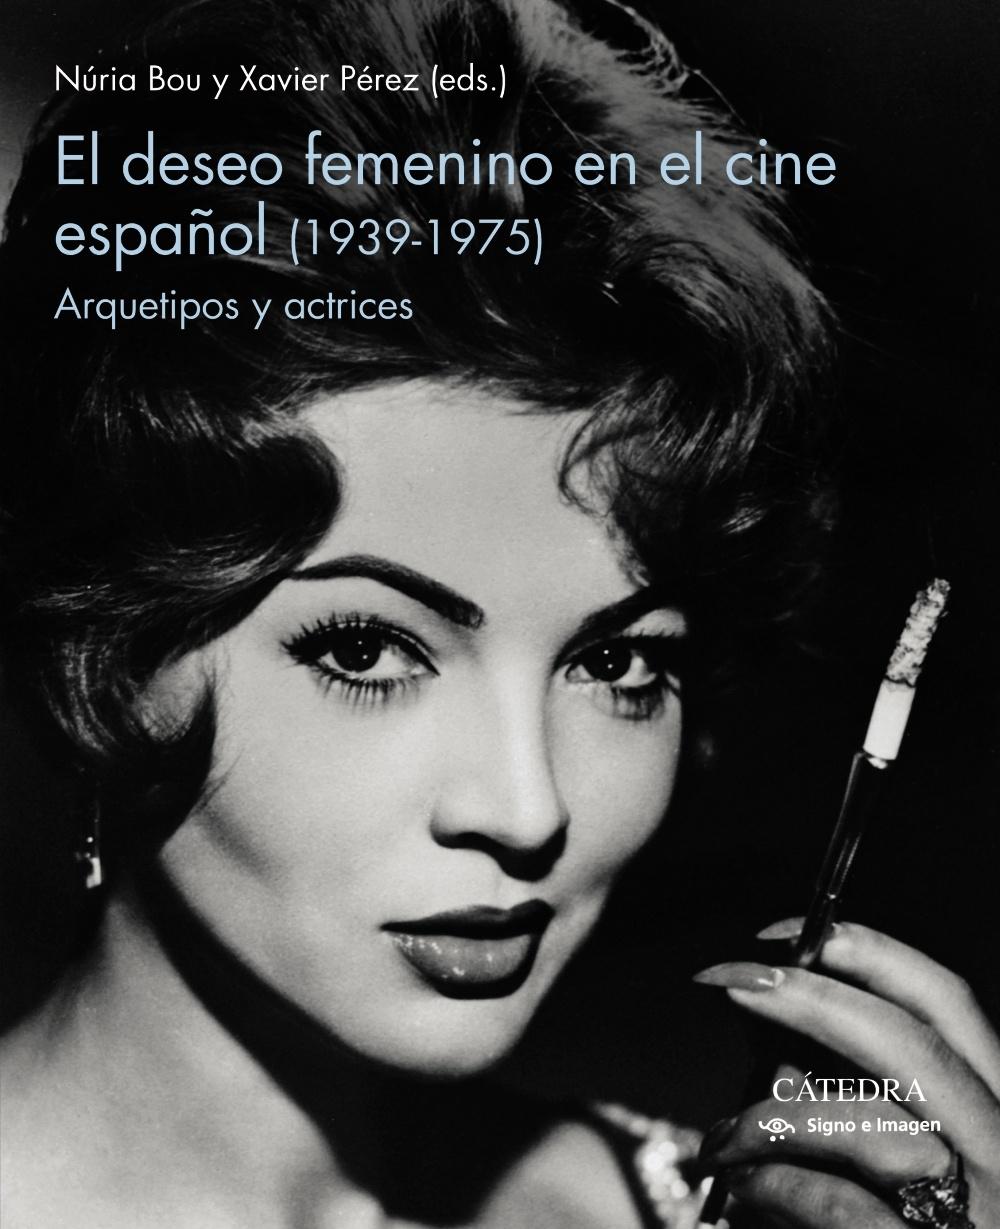 El deseo femenino en el cine español (1939-1975) "Arquetipos y actrices". 